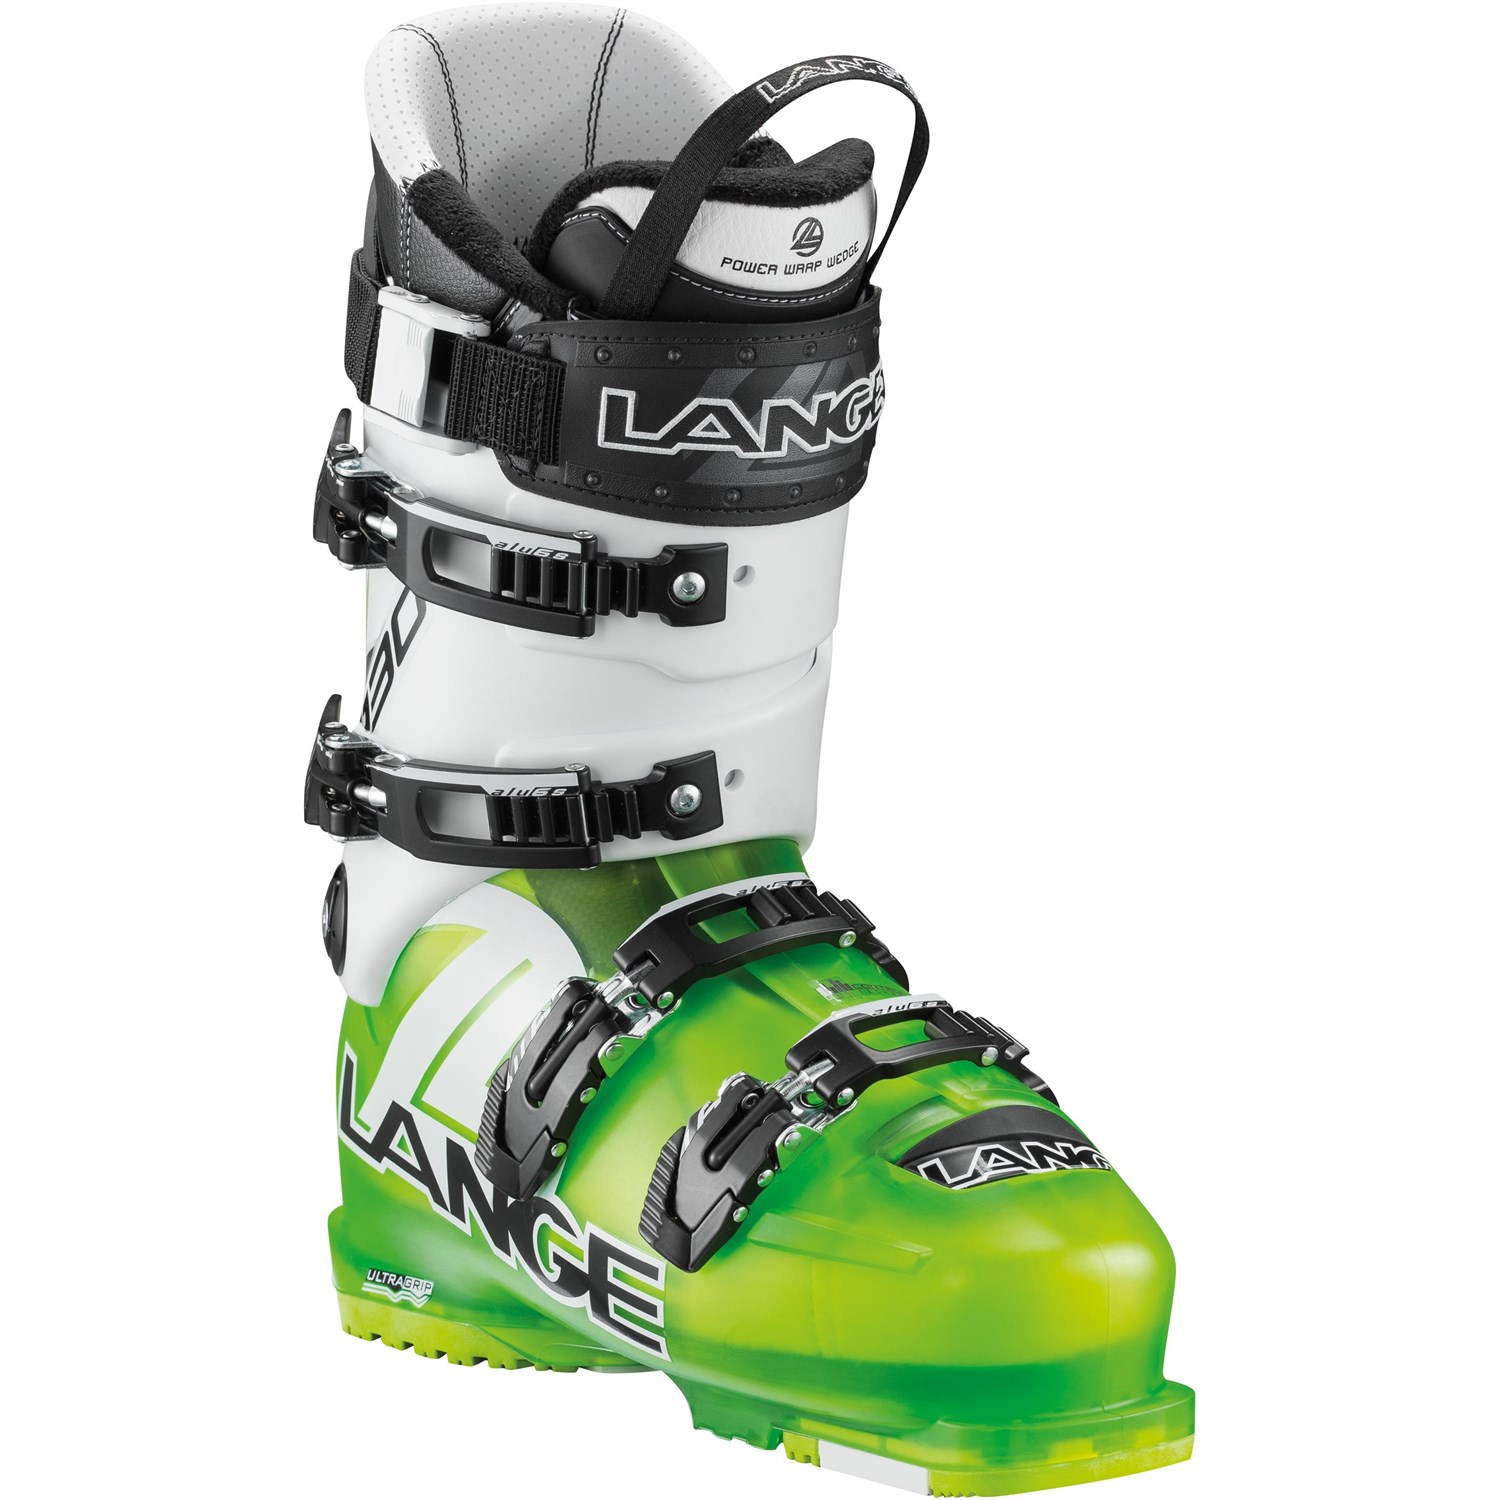 menu Vejfremstillingsproces Forvirre Lange RX 130 Ski Boots 2015 | evo